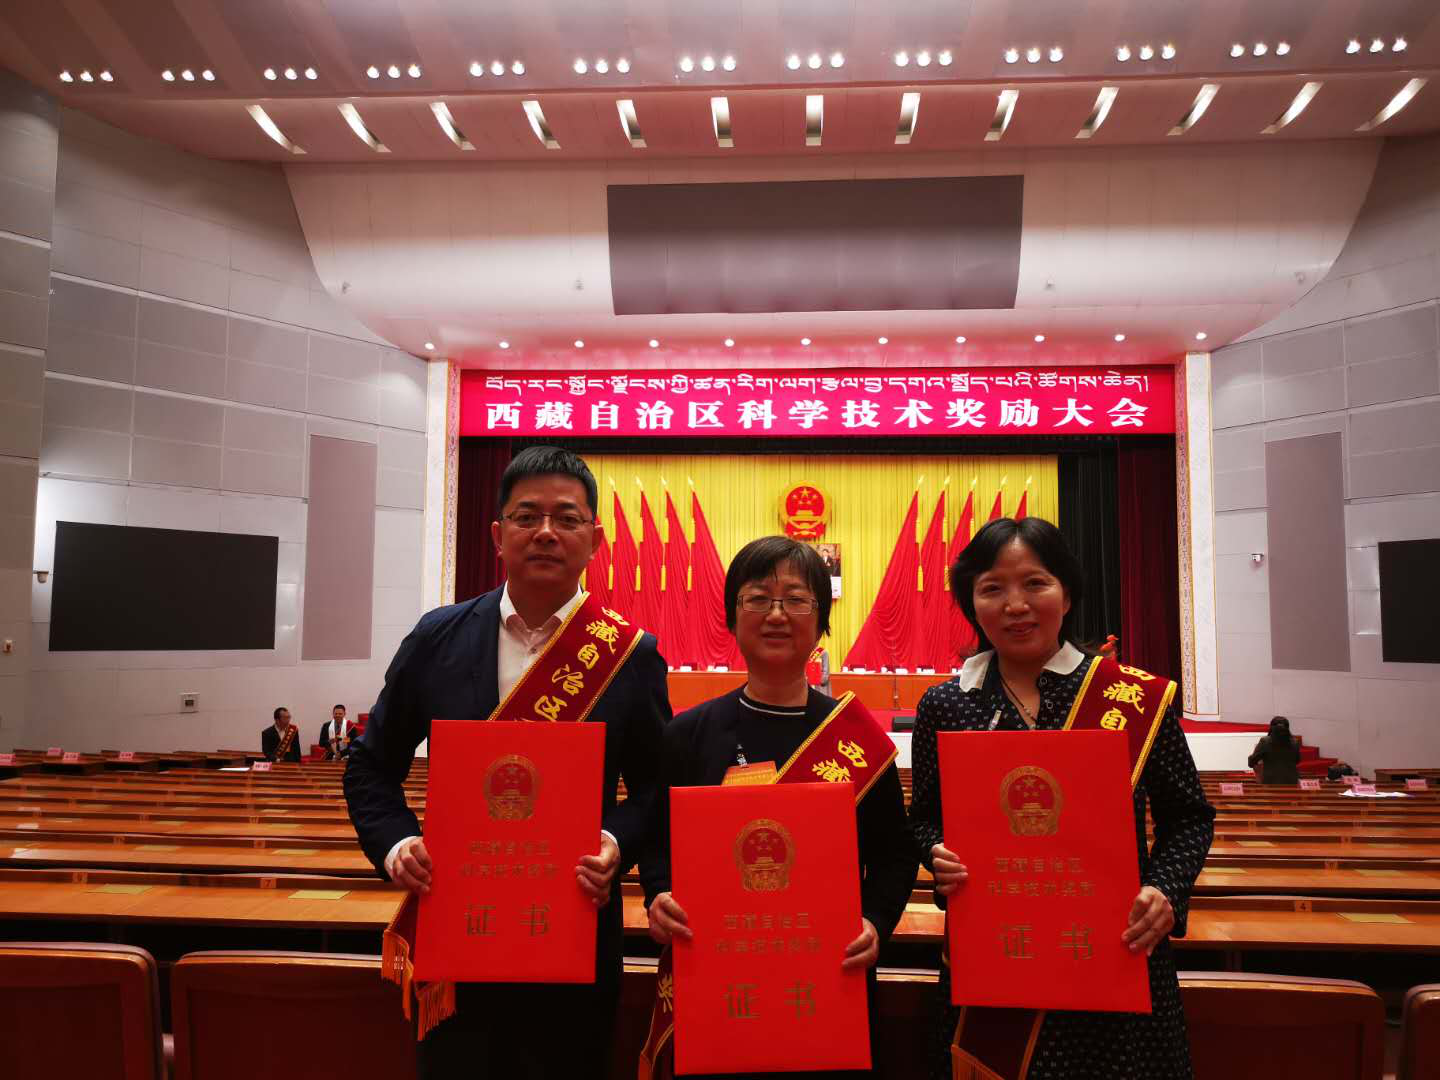 我校医学部孙芳云等3位同志被授予西藏自治区科技进步奖.png